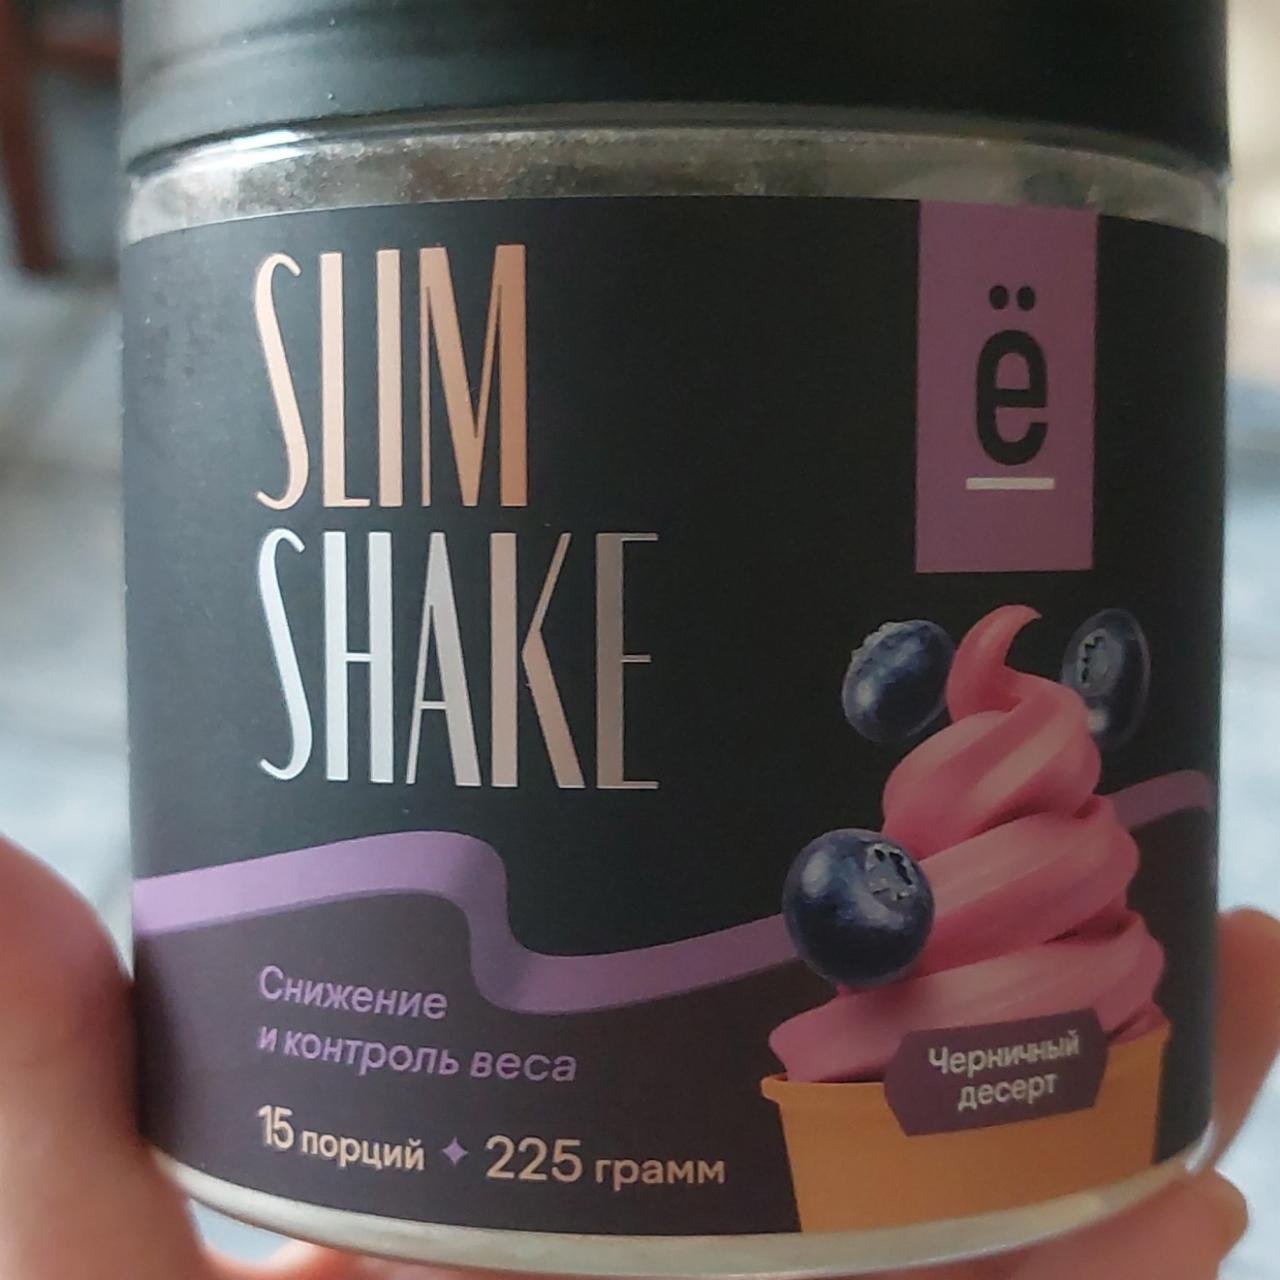 Фото - растворимый напиток для похудения со вкусом Черничный десерт Slim shake